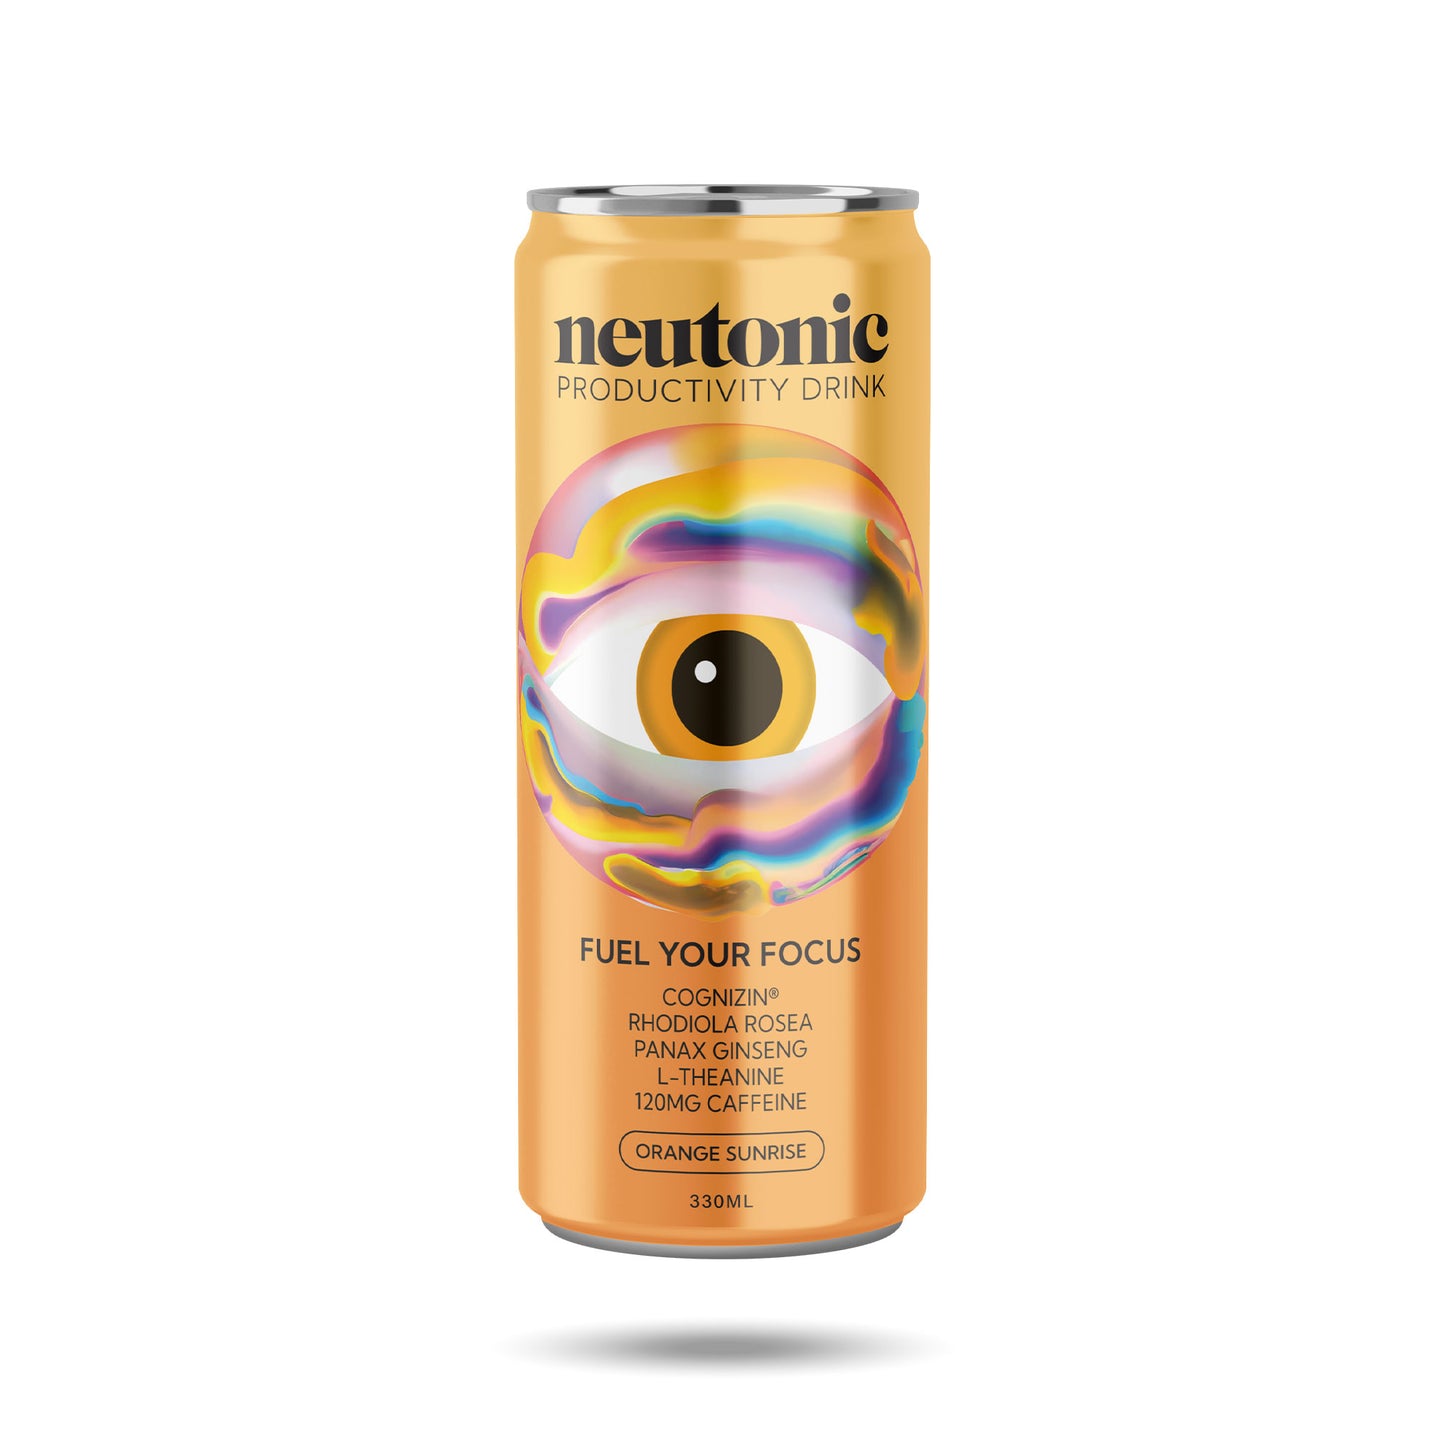 Neutonic Orange Sunrise product image front